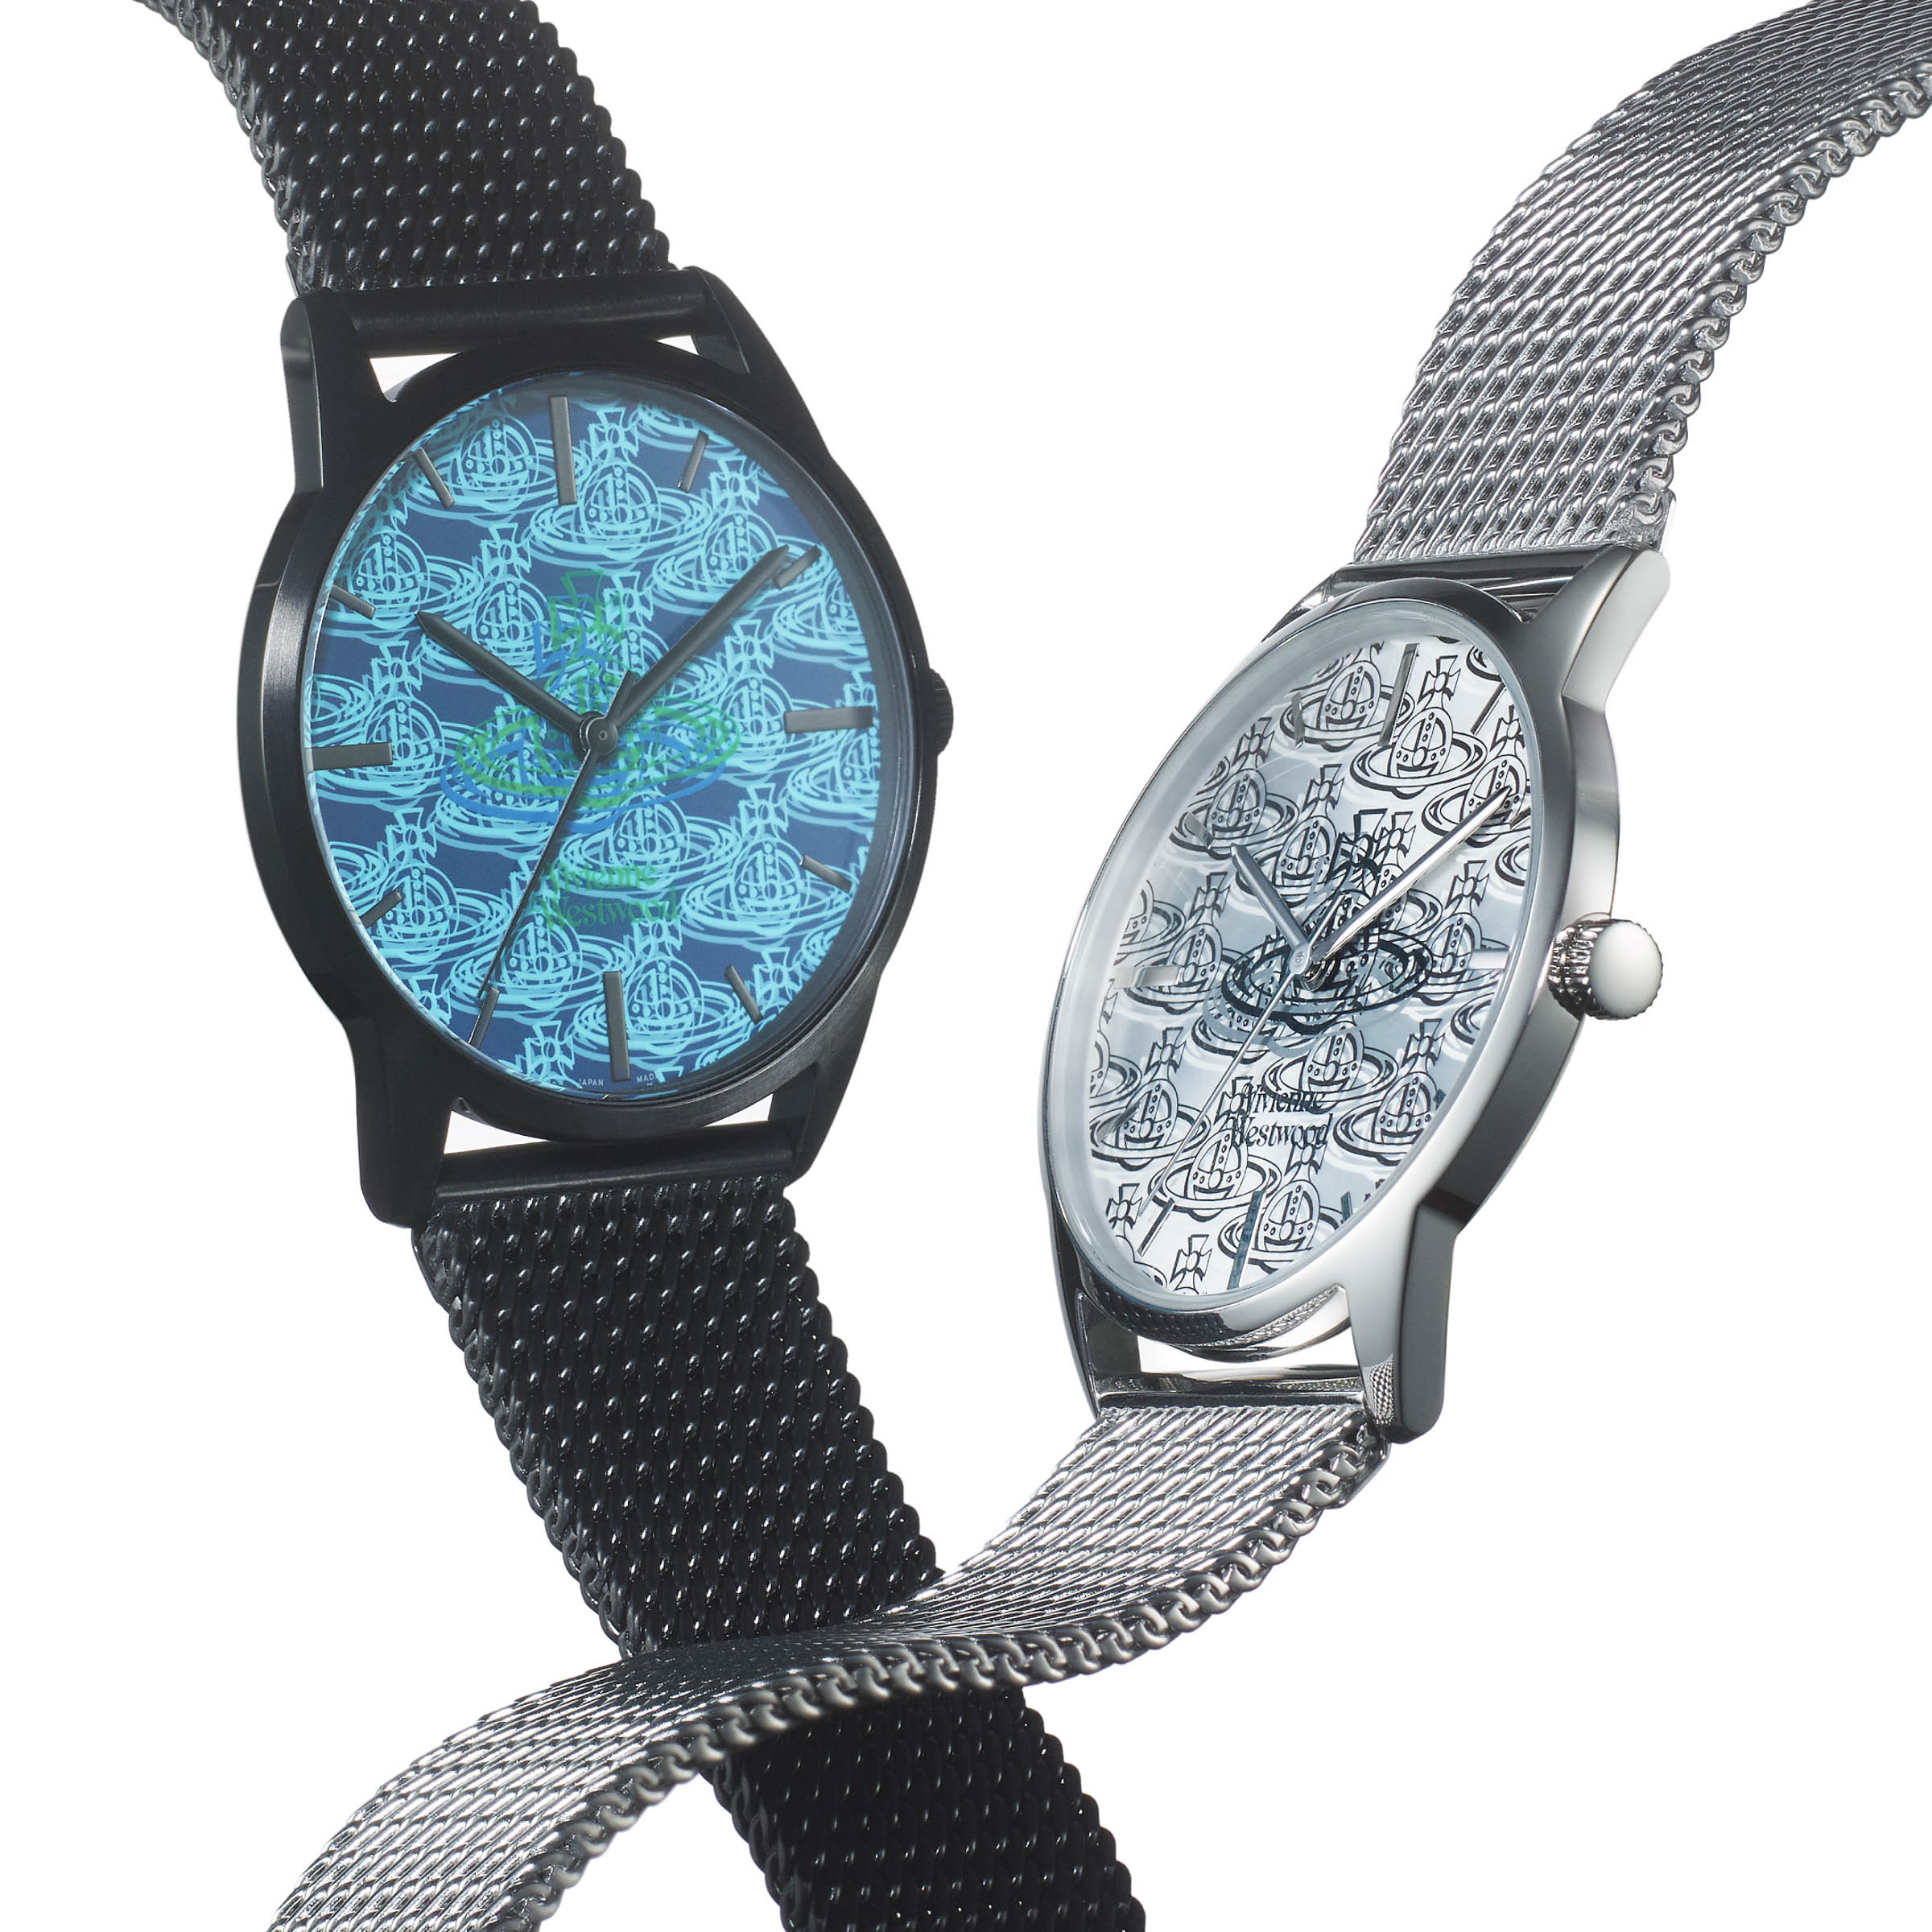 ヴィヴィアンウエストウッド 腕時計 オーブハンド グリーン VW23D9-92 - 腕時計(アナログ)